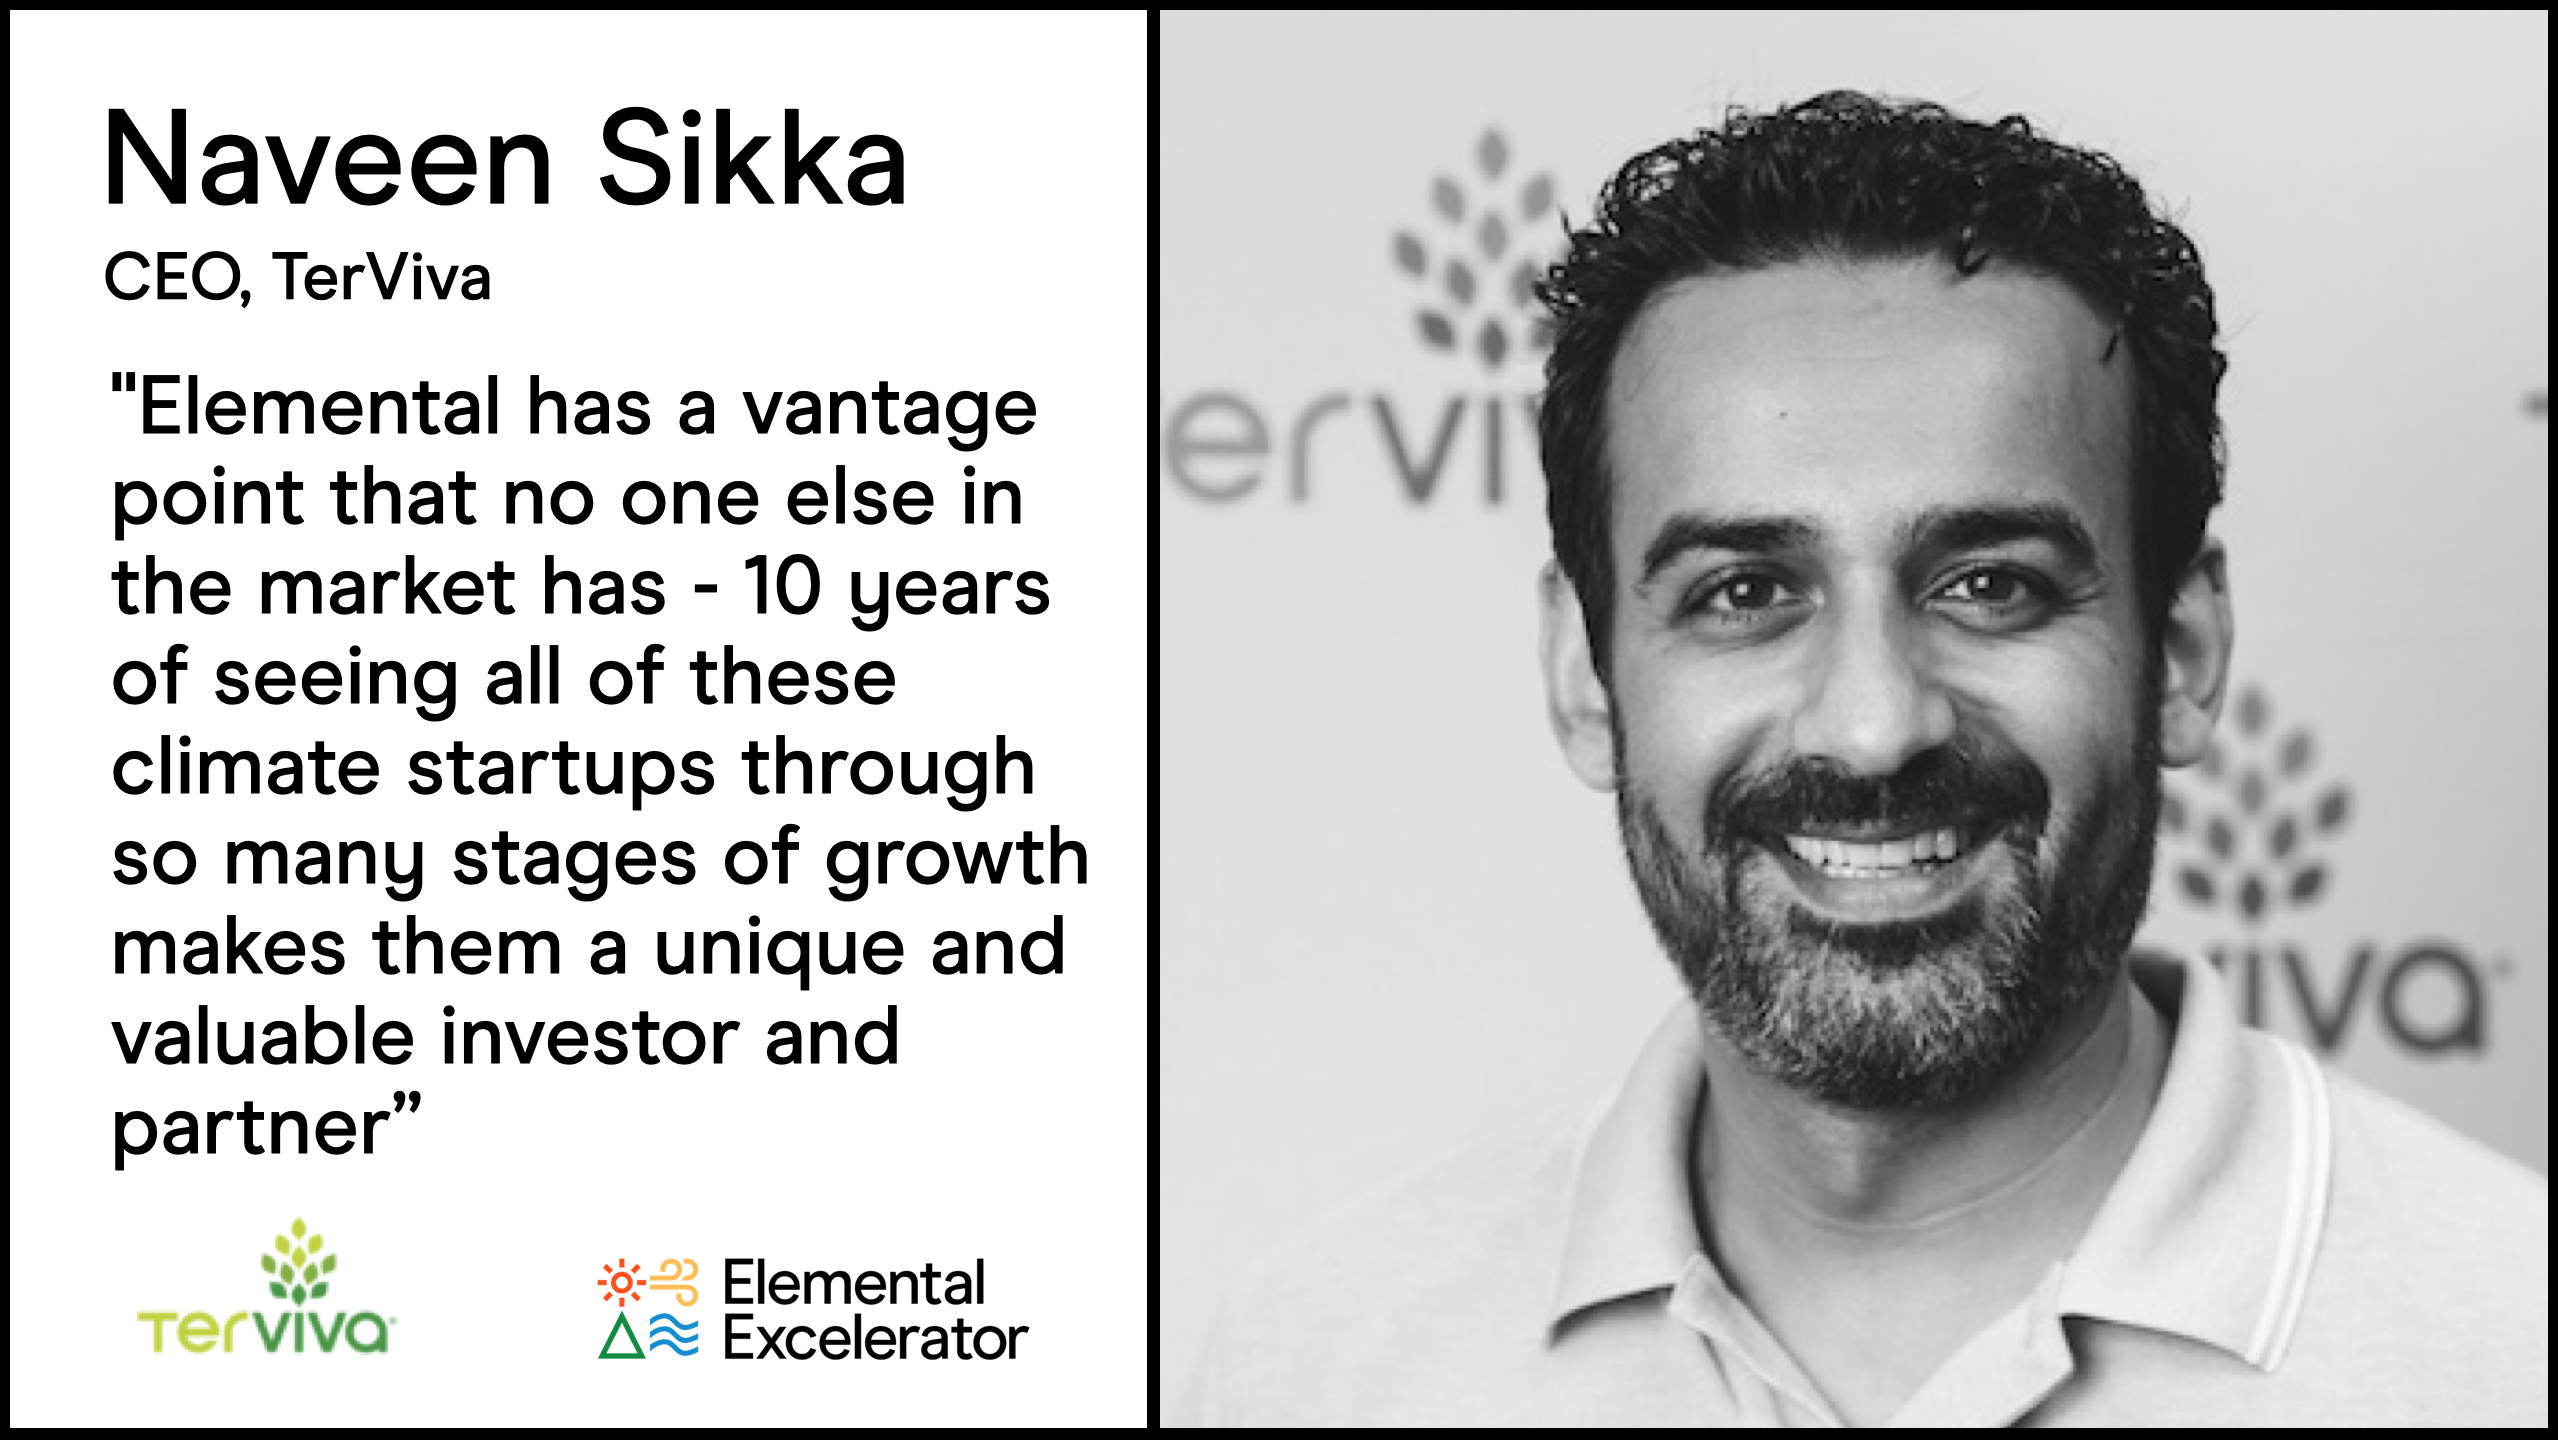 Naveen Sikka describes Elemental's unique value